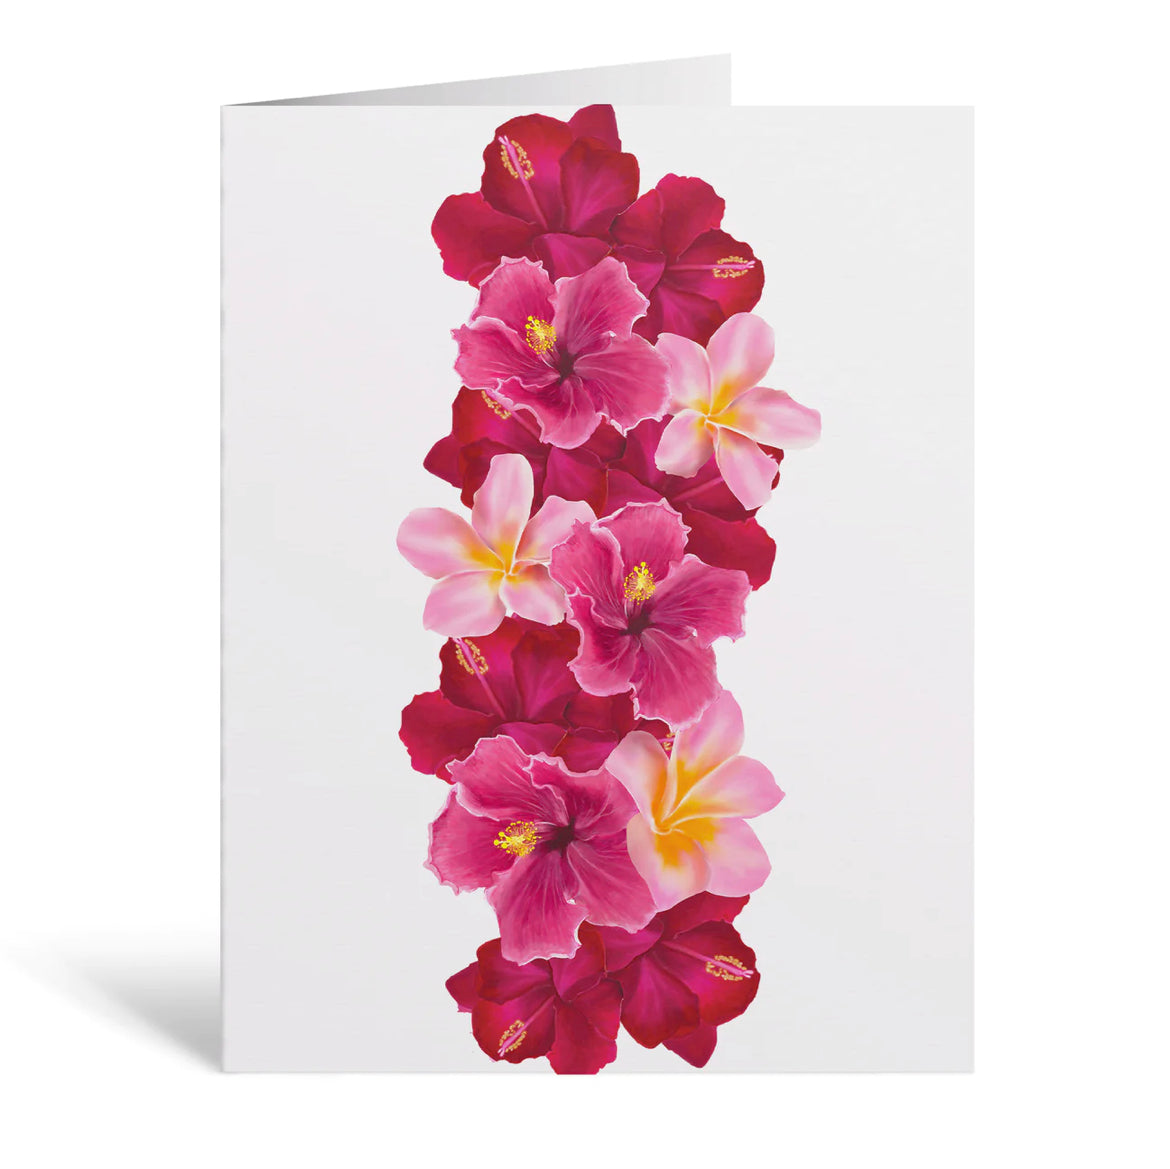 Aloha de Male - Greeting Cards